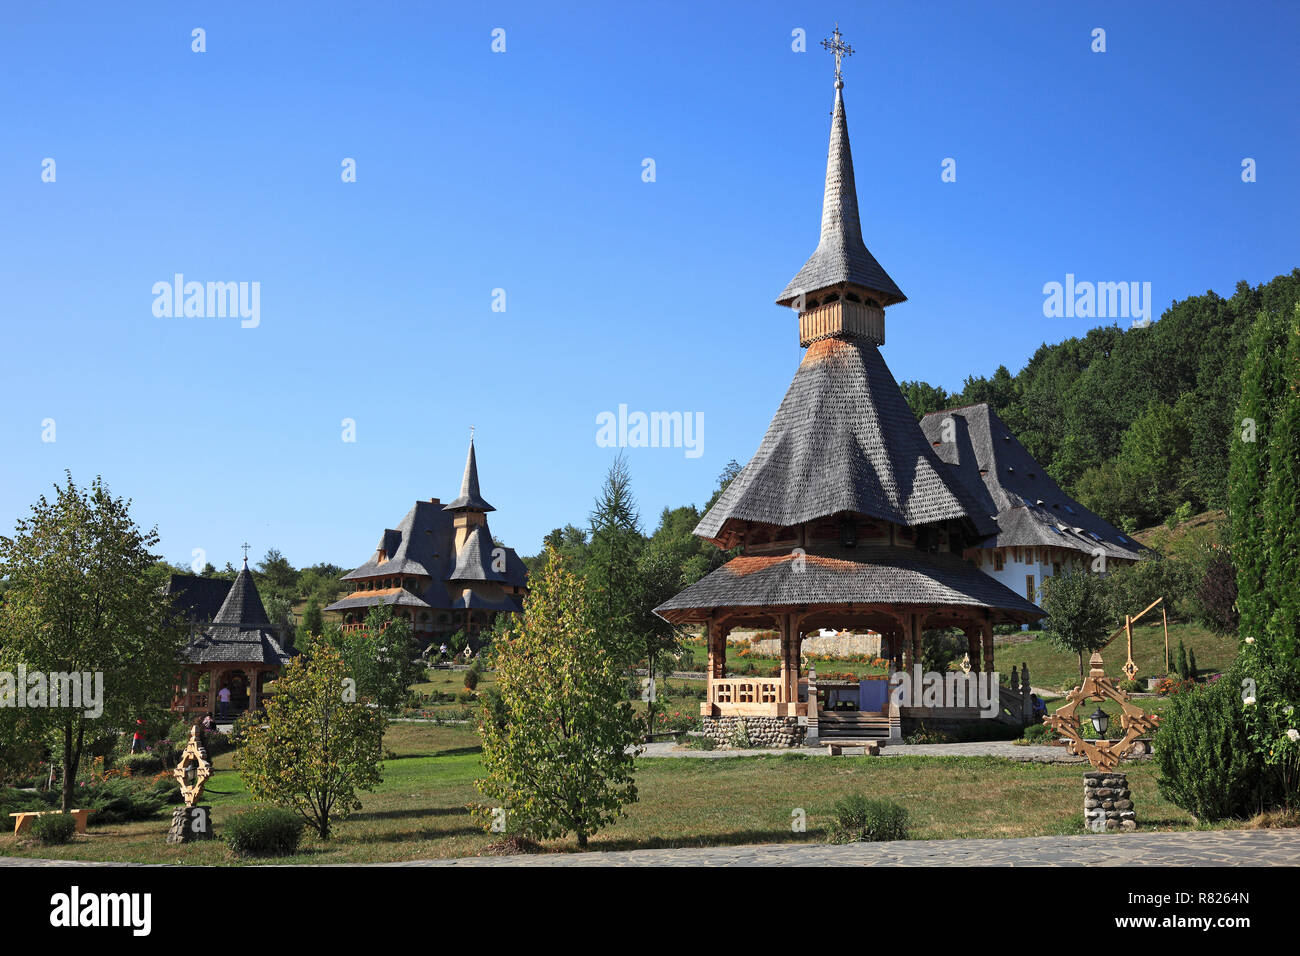 New Nuns Monastery of Barsana, Barsana, Maramureș County, Romania Stock Photo